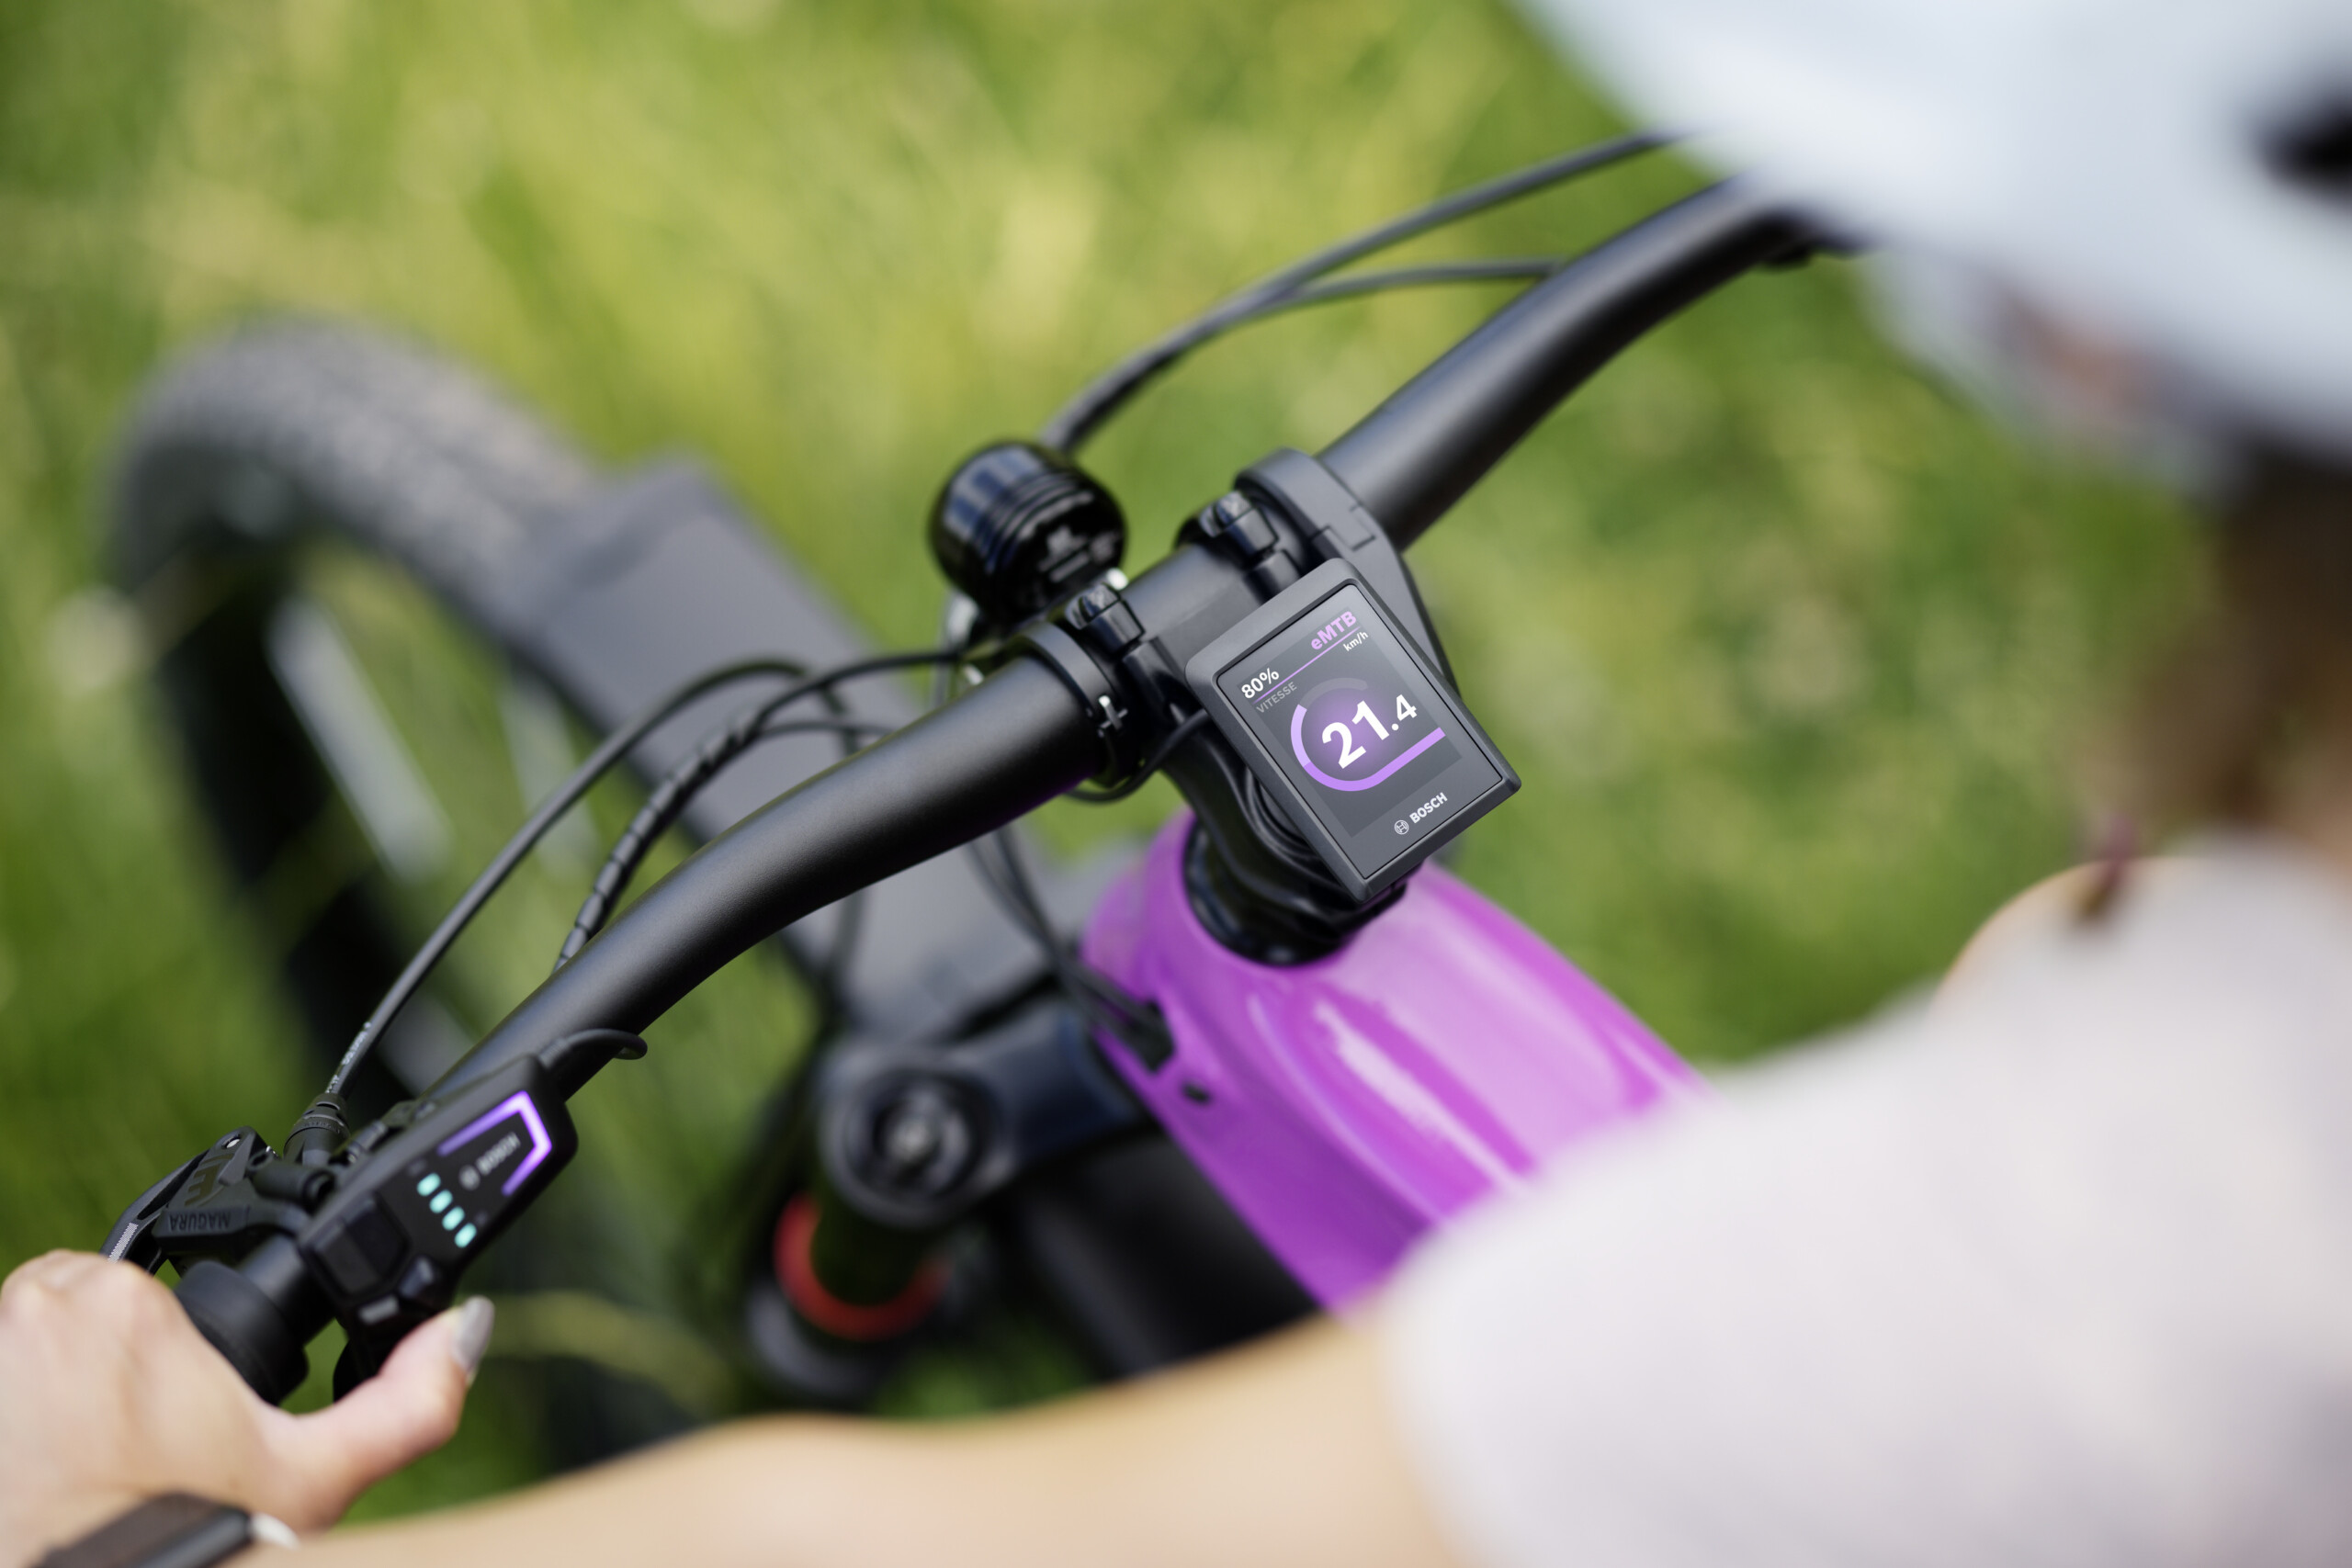 Comment Bosch veut pimper nos vélos électriques de 2022